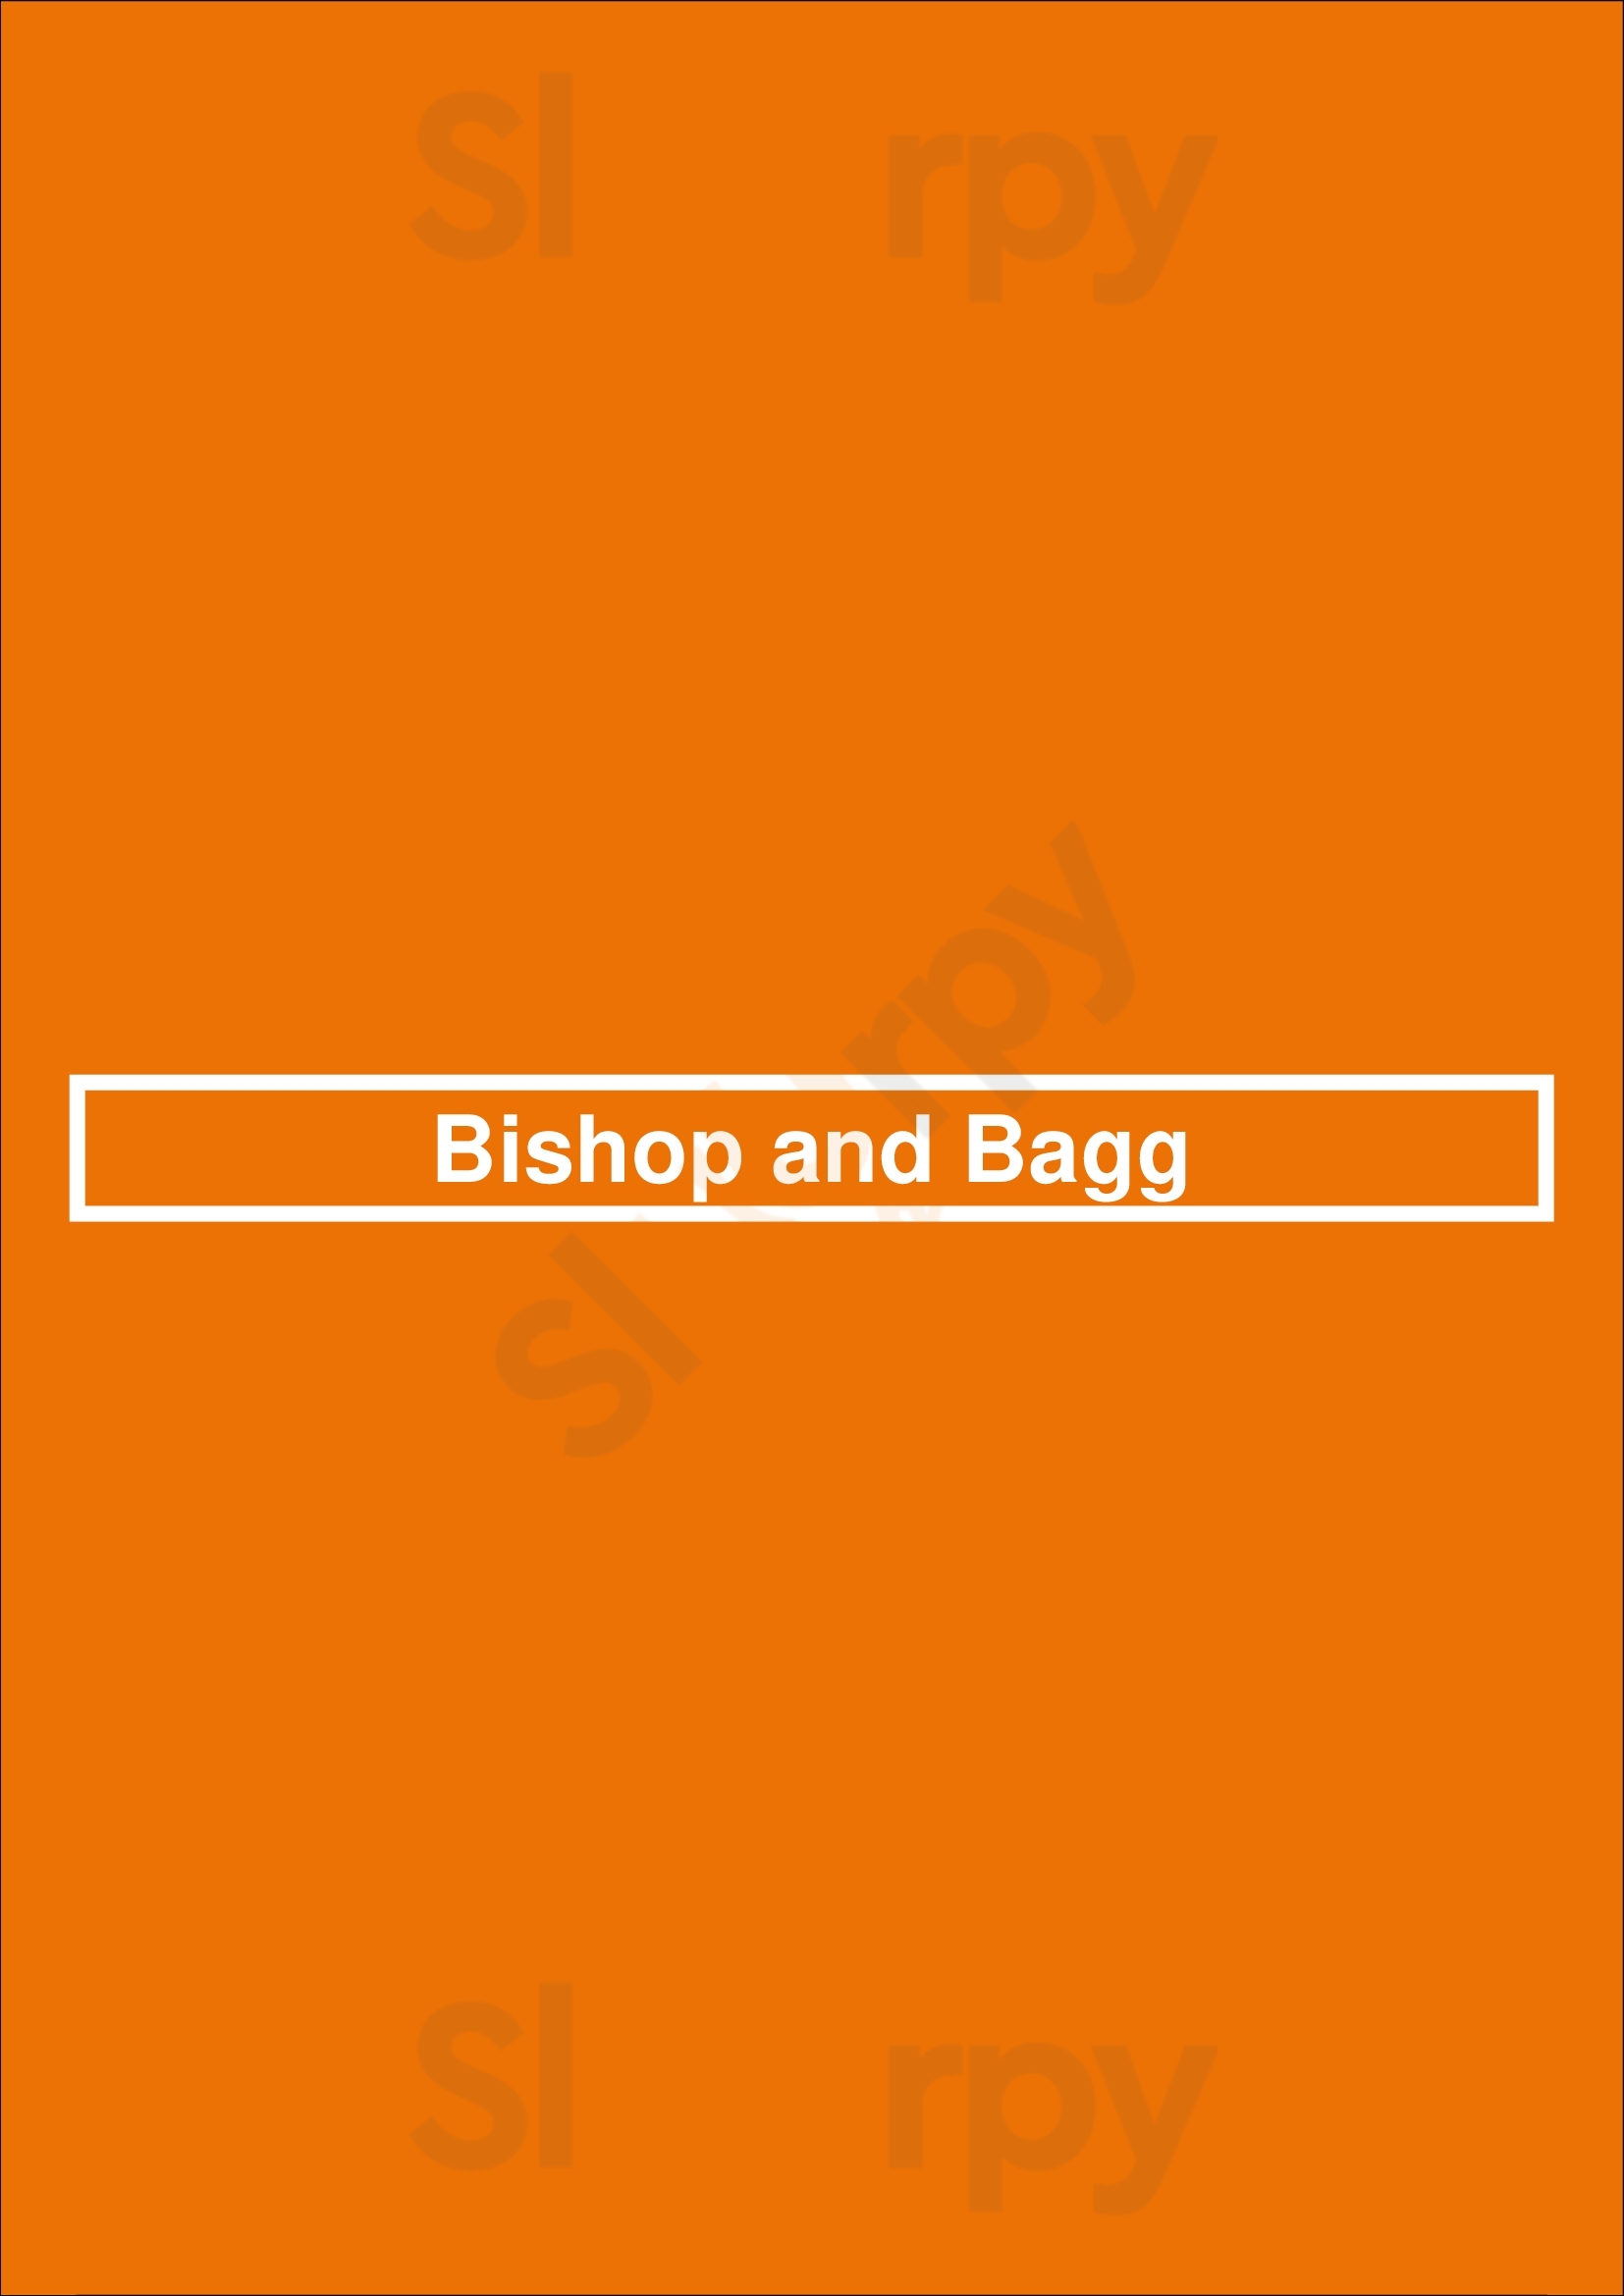 Bishop And Bagg Montreal Menu - 1